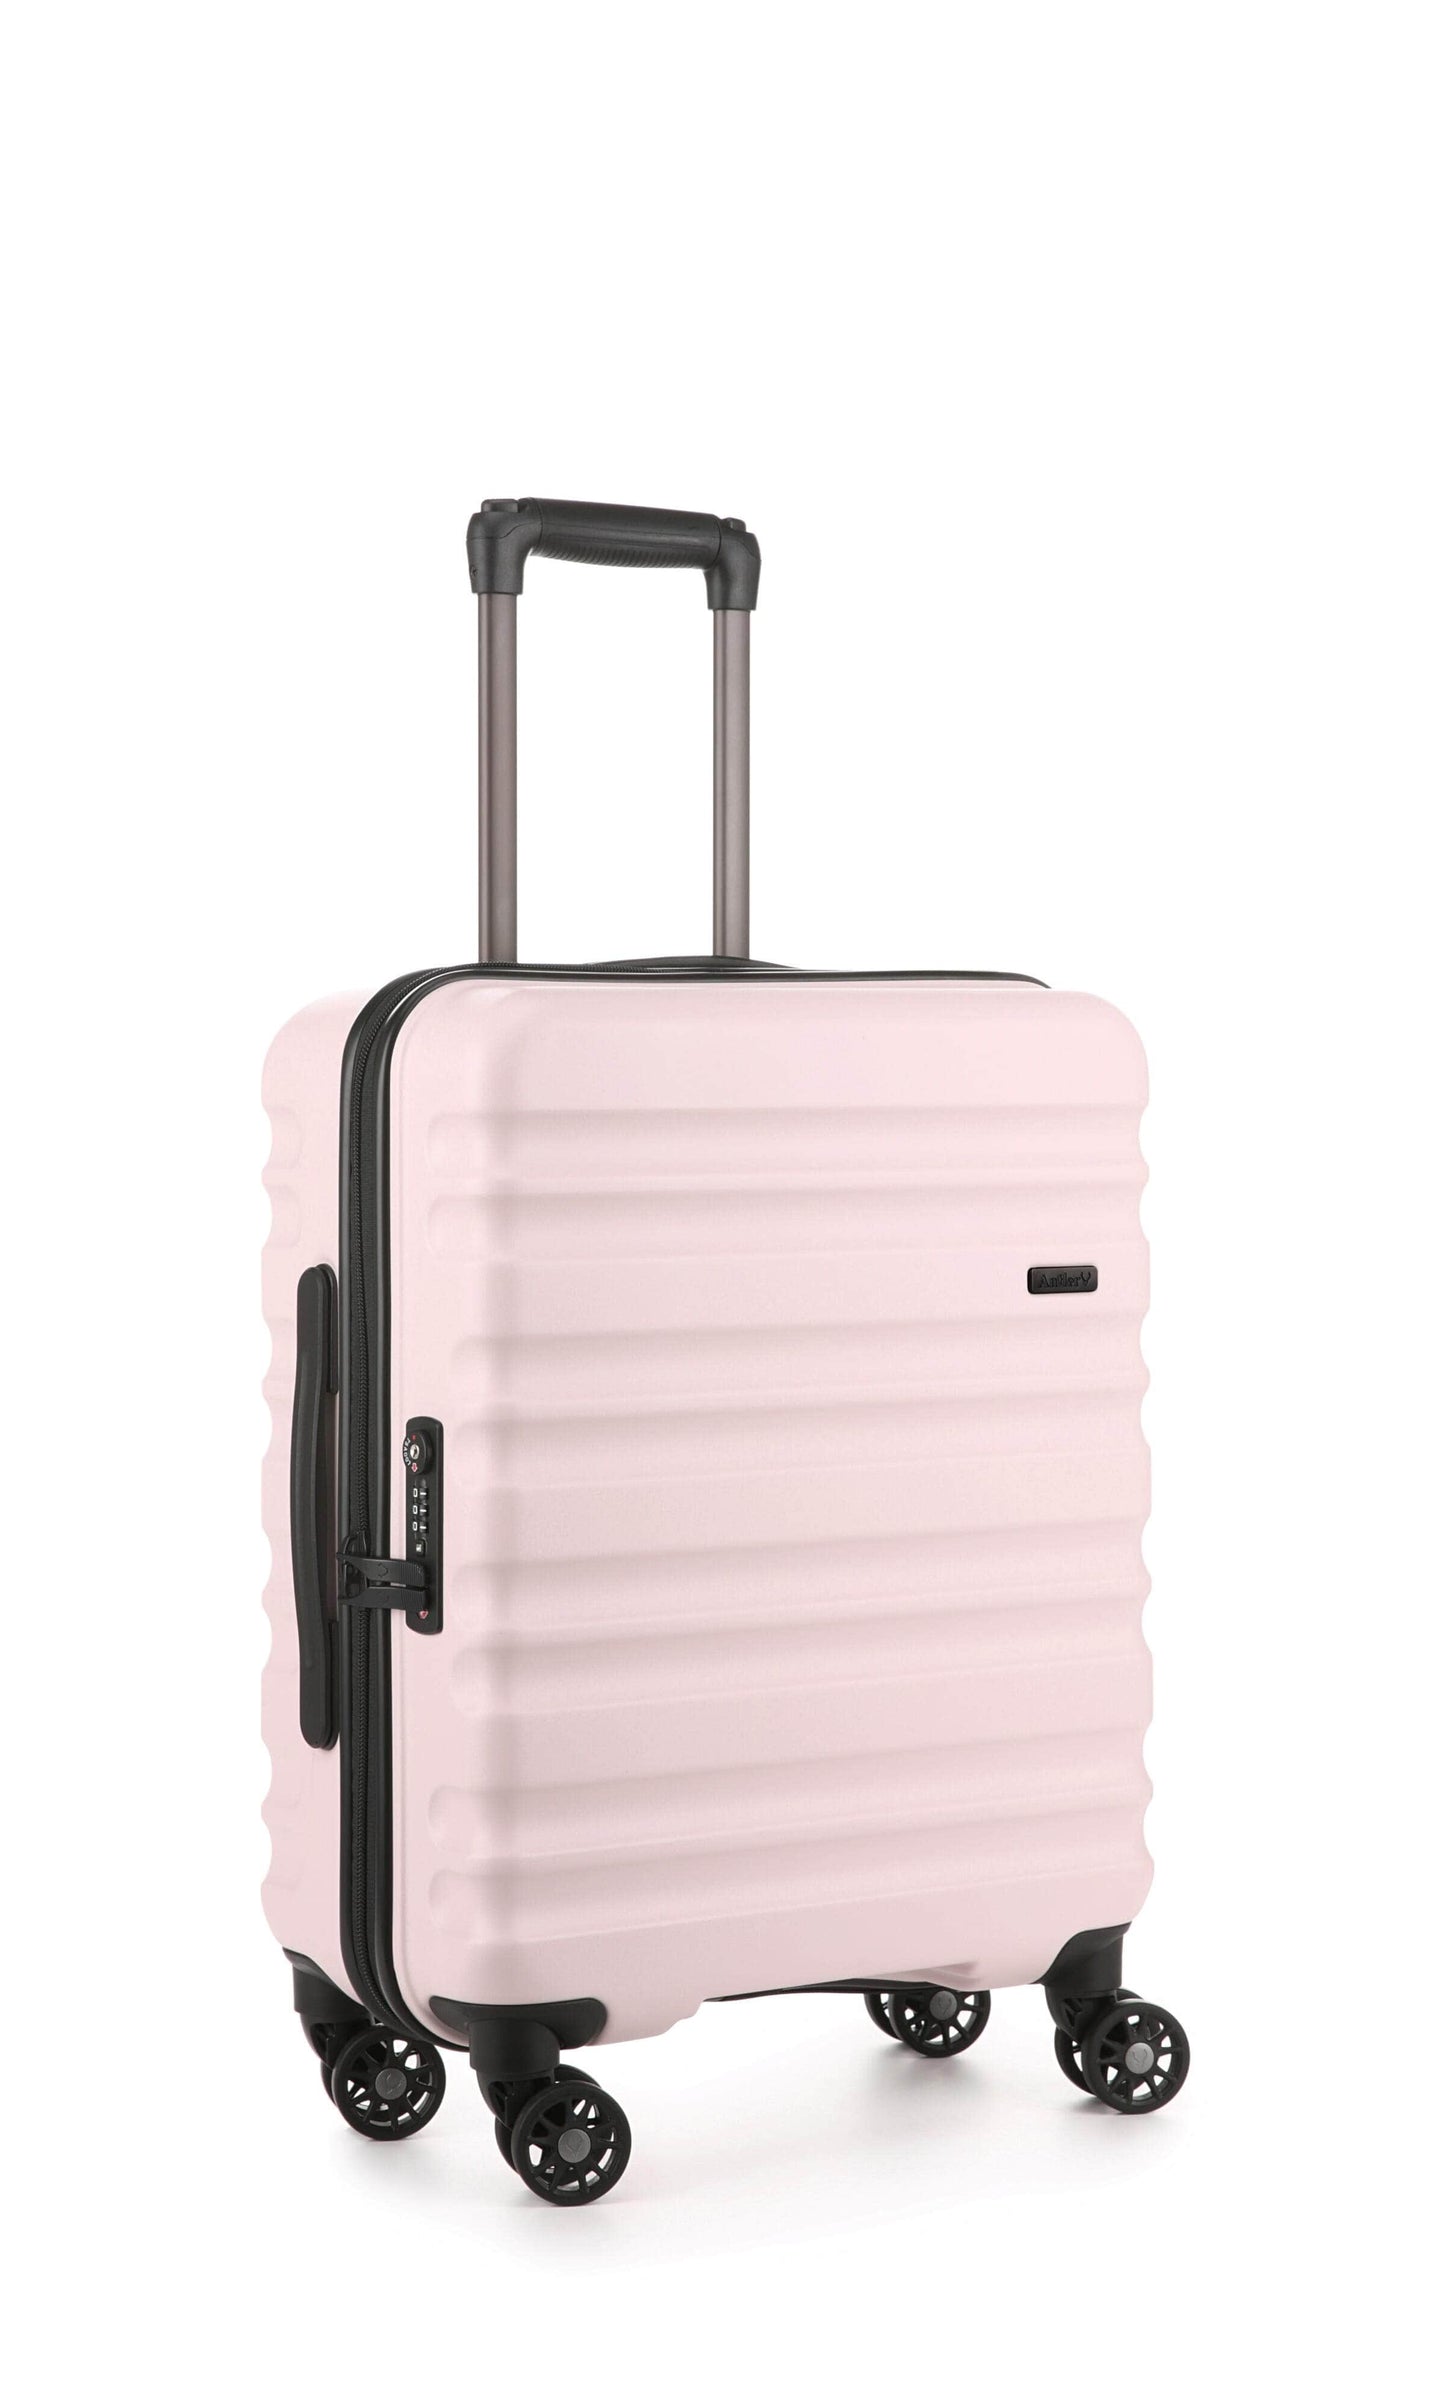 Antler Luggage -  Clifton cabin in blush - Hard Suitcases Clifton 55x40x20cm Cabin Suitcase Blush | Hard Suitcase | Antler UK